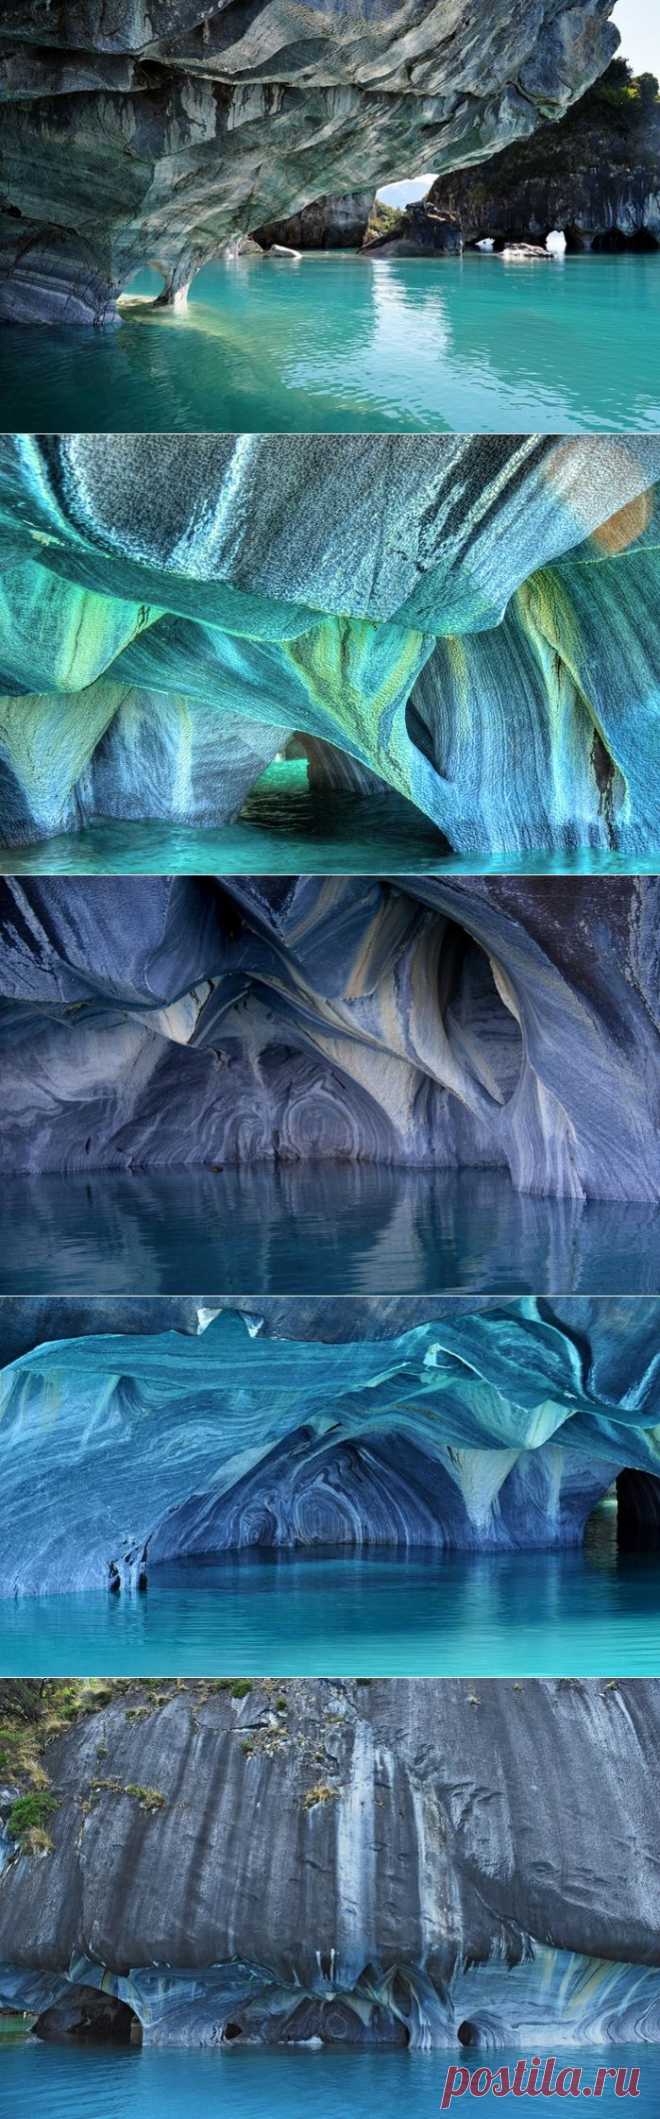 Удивительные мраморные пещеры Чиле-Чико.